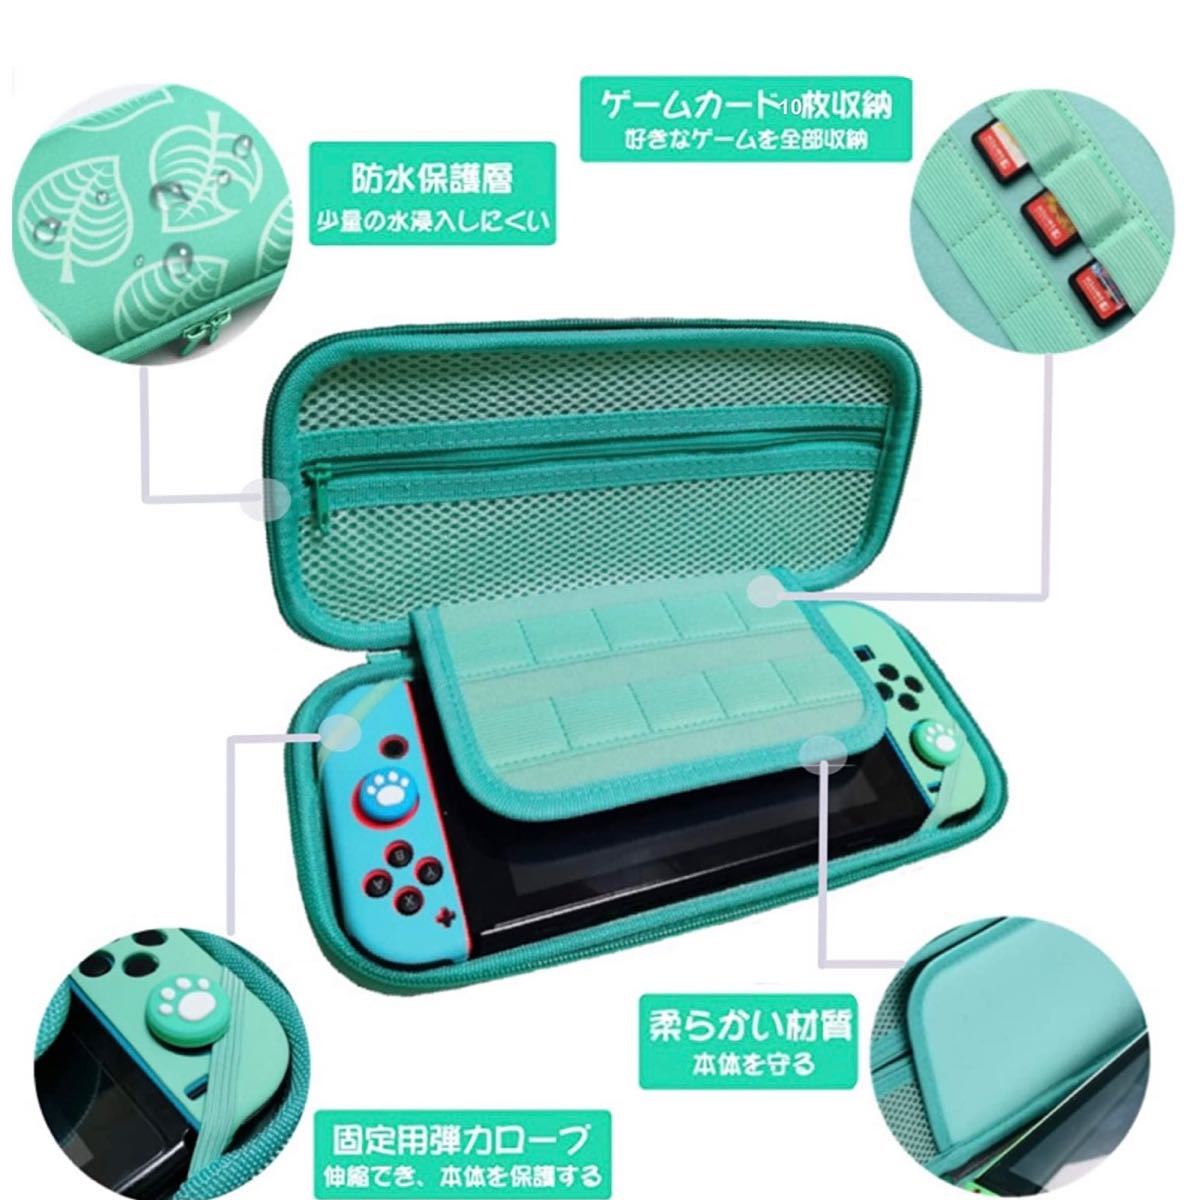 最新 Nintendo Switch ケース 任天堂スイッチ専用どうぶつの森